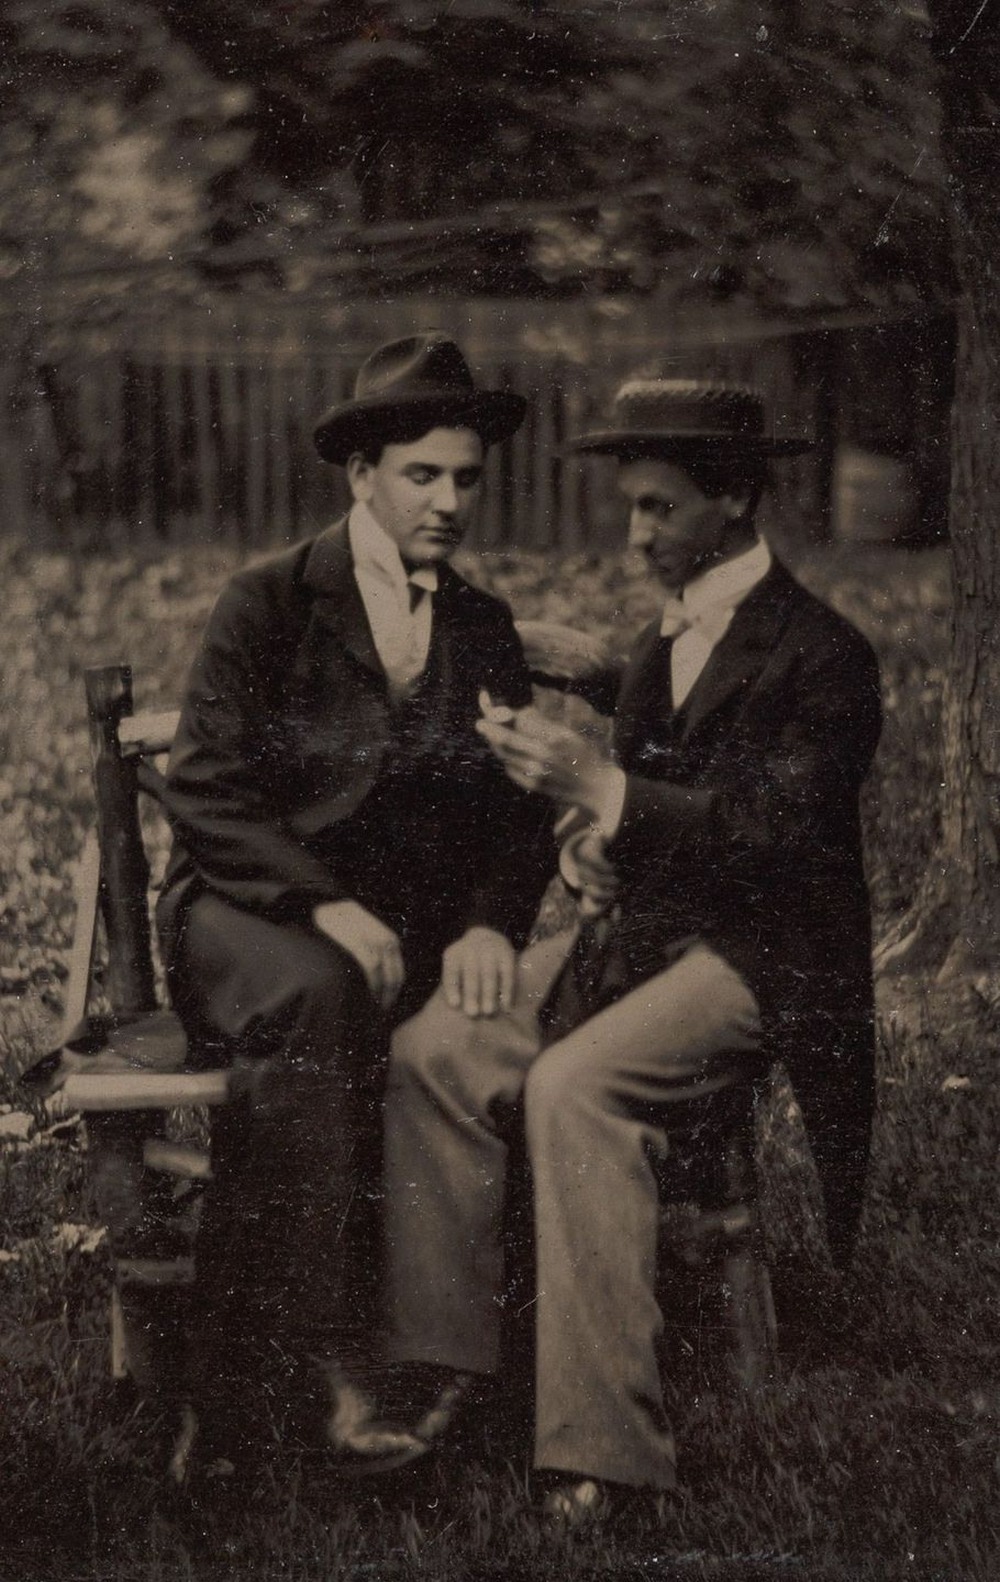 Броманс в викторианскую эпоху: интимные мужские объятия в редких фотографиях конца 1800-х годов  7